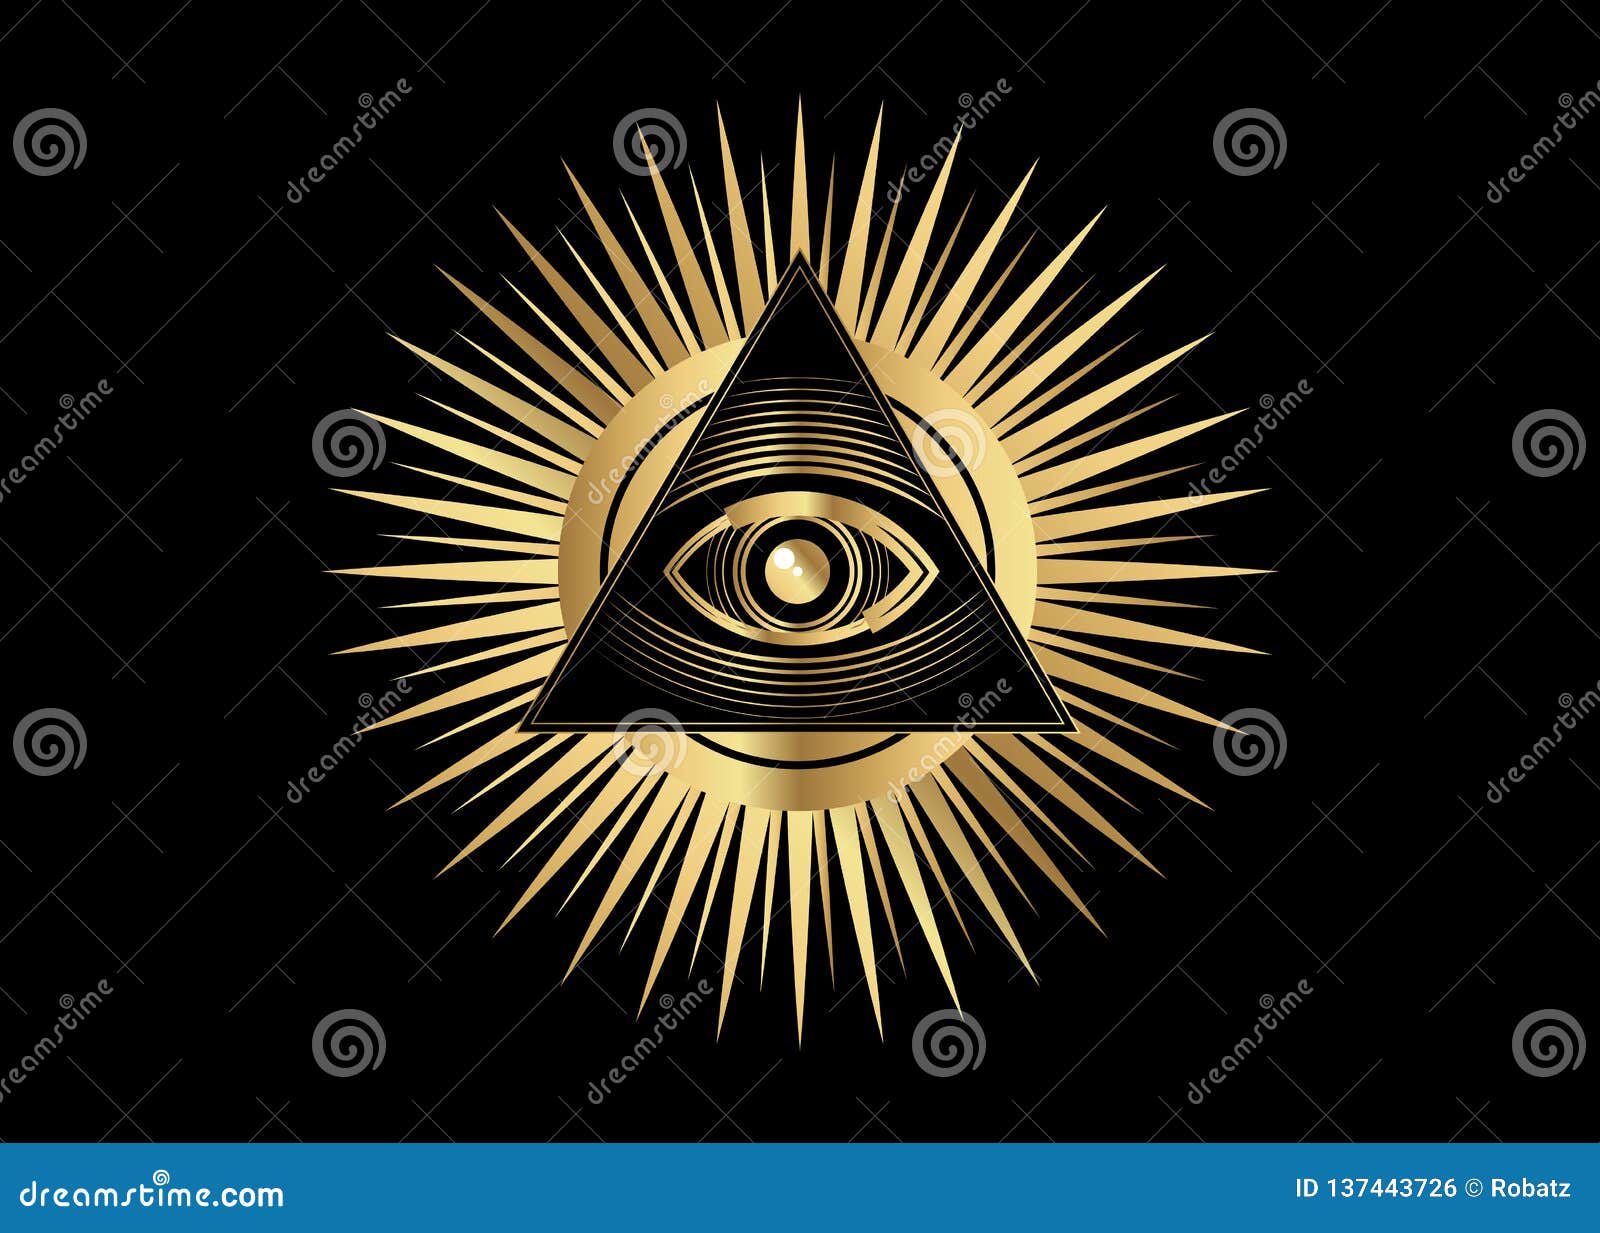 Símbolo Maçônico Sagrado Ouro Todo O Olho De Vista, O Terceiro Olho O Olho  Do Providência Dentro Da Pirâmide Do Triângulo Ordem M Ilustração do Vetor  - Ilustração de tudo, isolado: 137443726